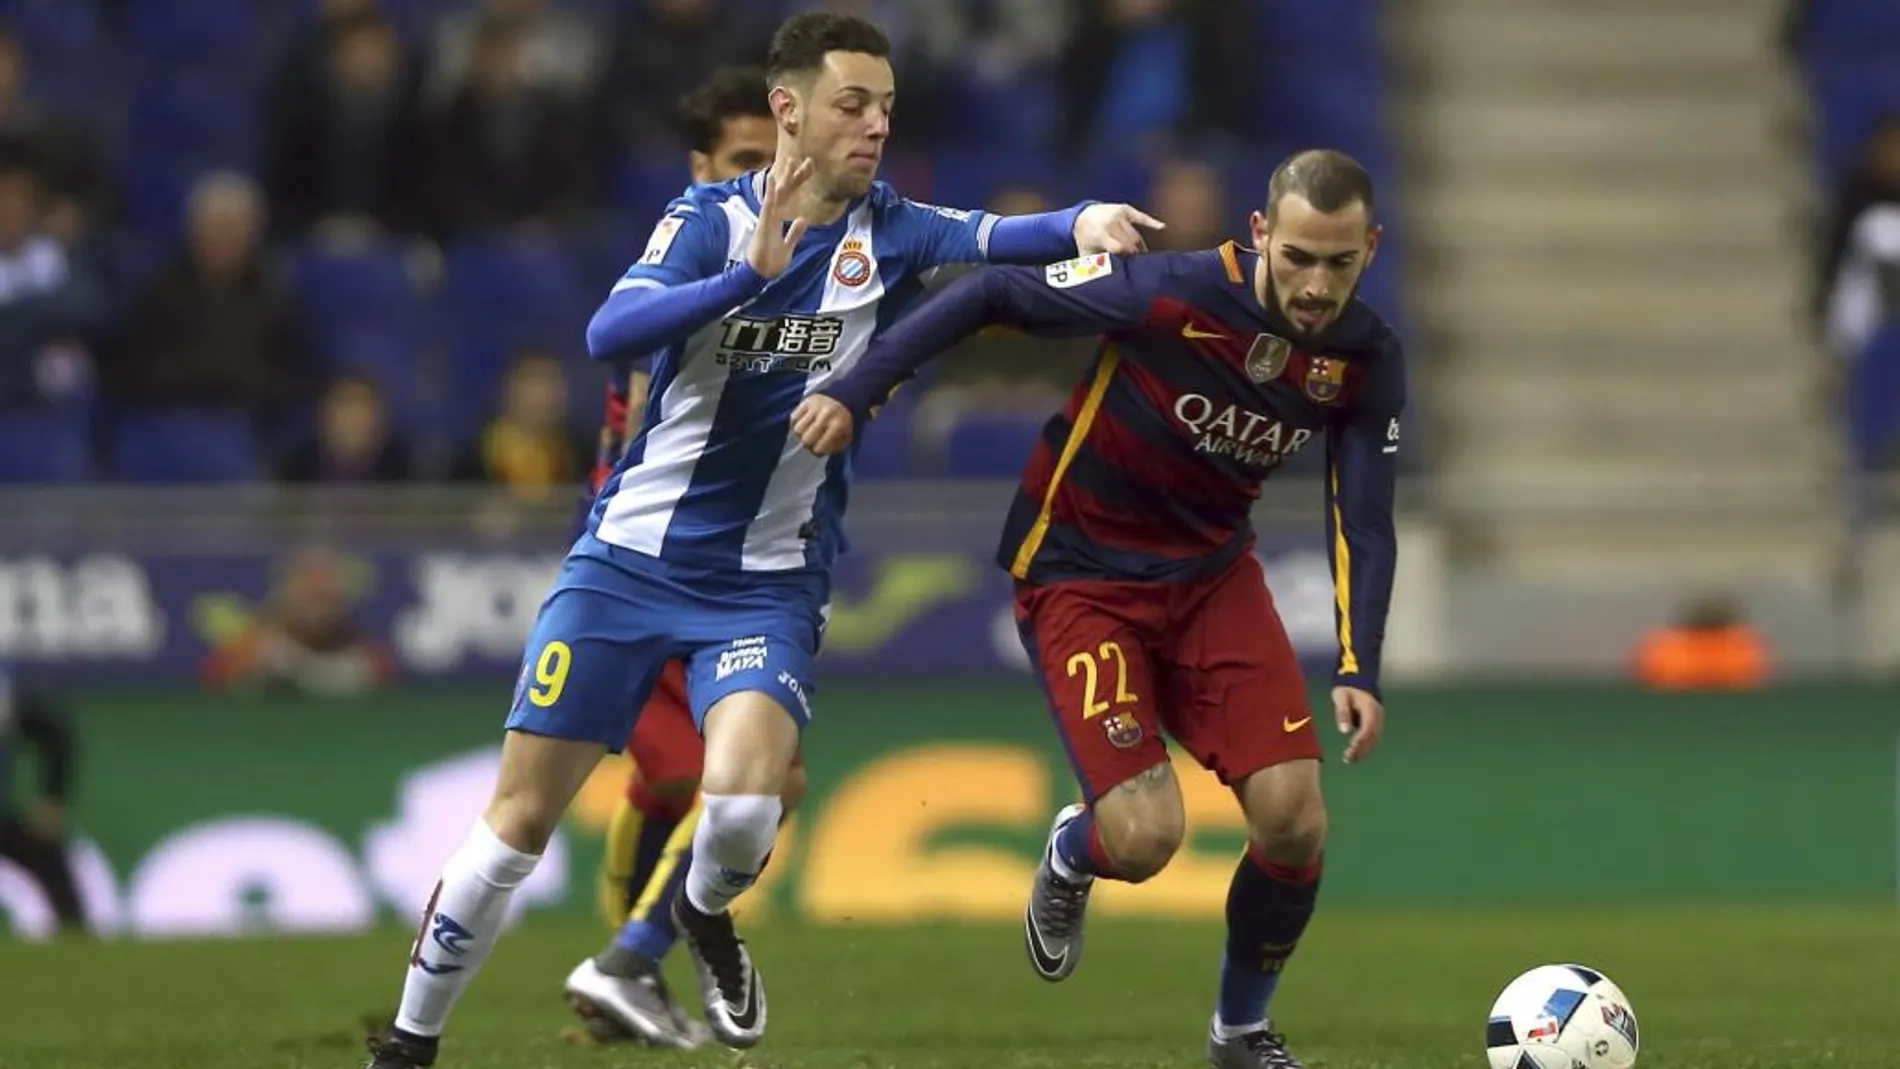 El delantero del Espanyol Jorge Burgui disputa un balón con el defensa del FC Barcelona Aleix Vidal